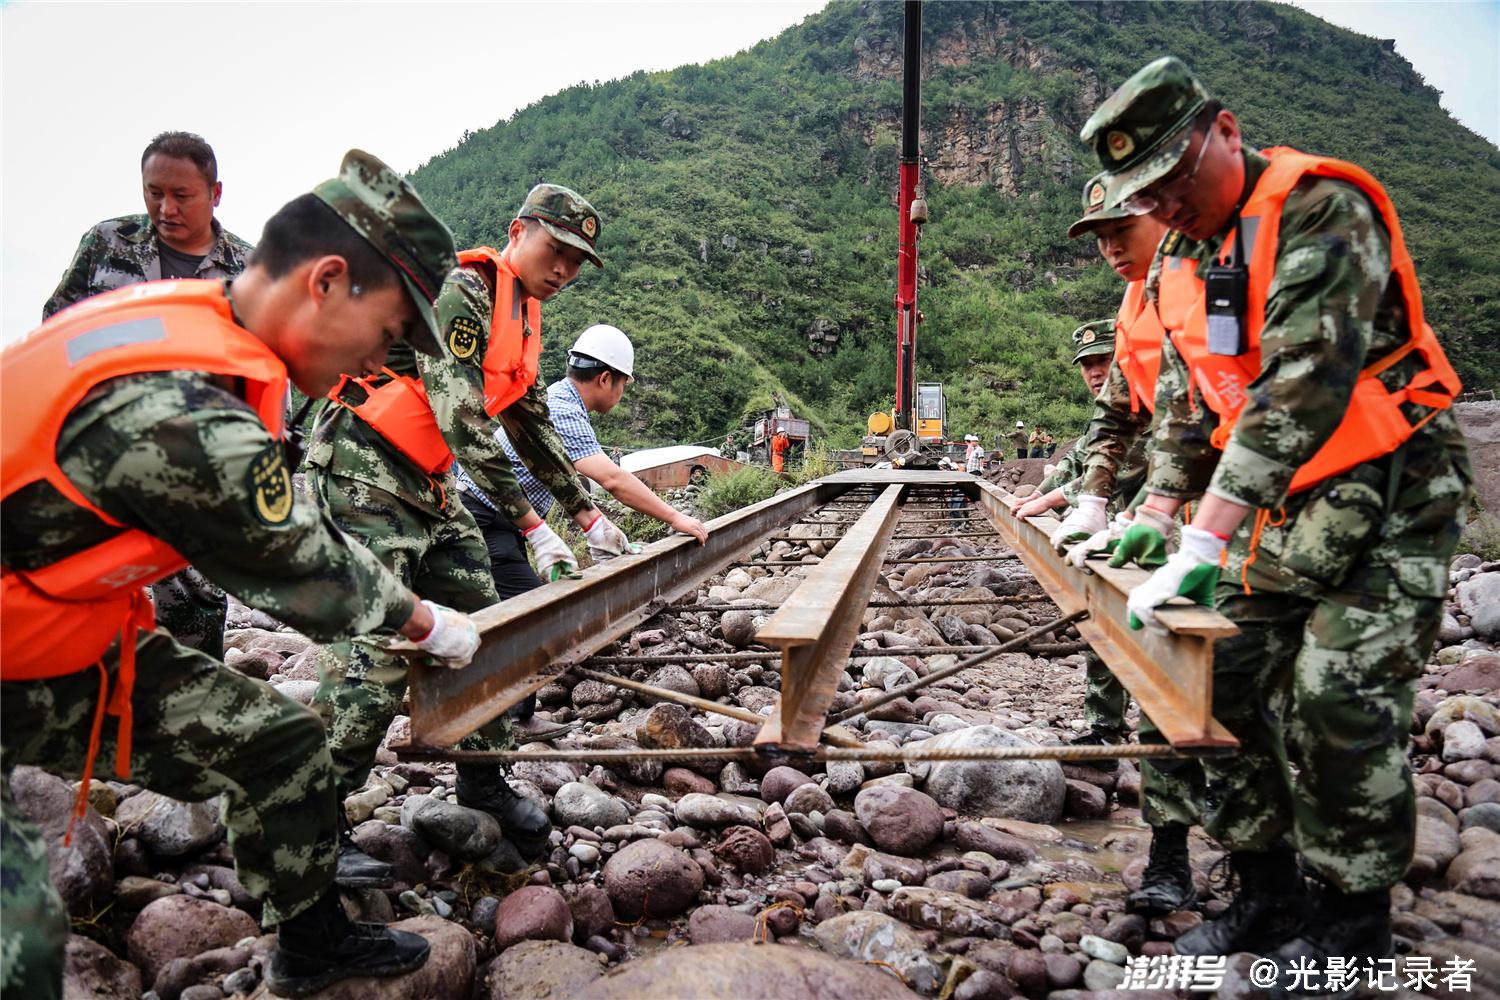 2016年7月15日,武警官兵在四川省凉山州越西县瓦岩乡渔洞村帮助受灾